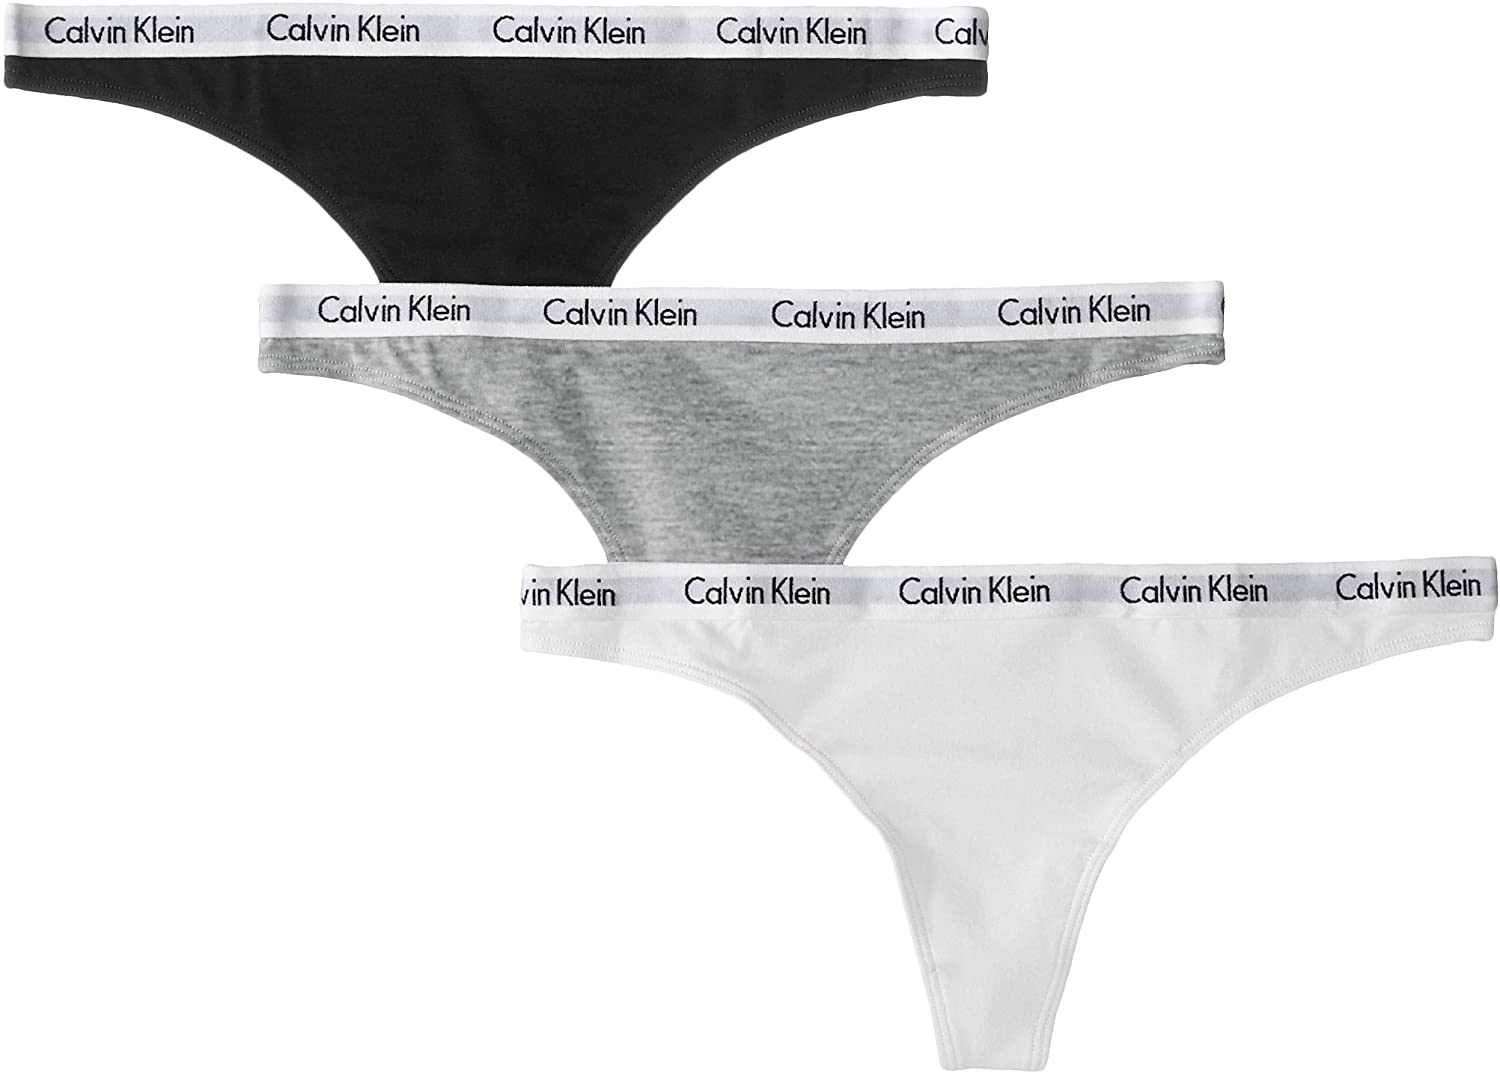 stap arm Aarzelen Amazon Valentine's Day: Save Up to 50% off Calvin Klein Underwear |  Entertainment Tonight